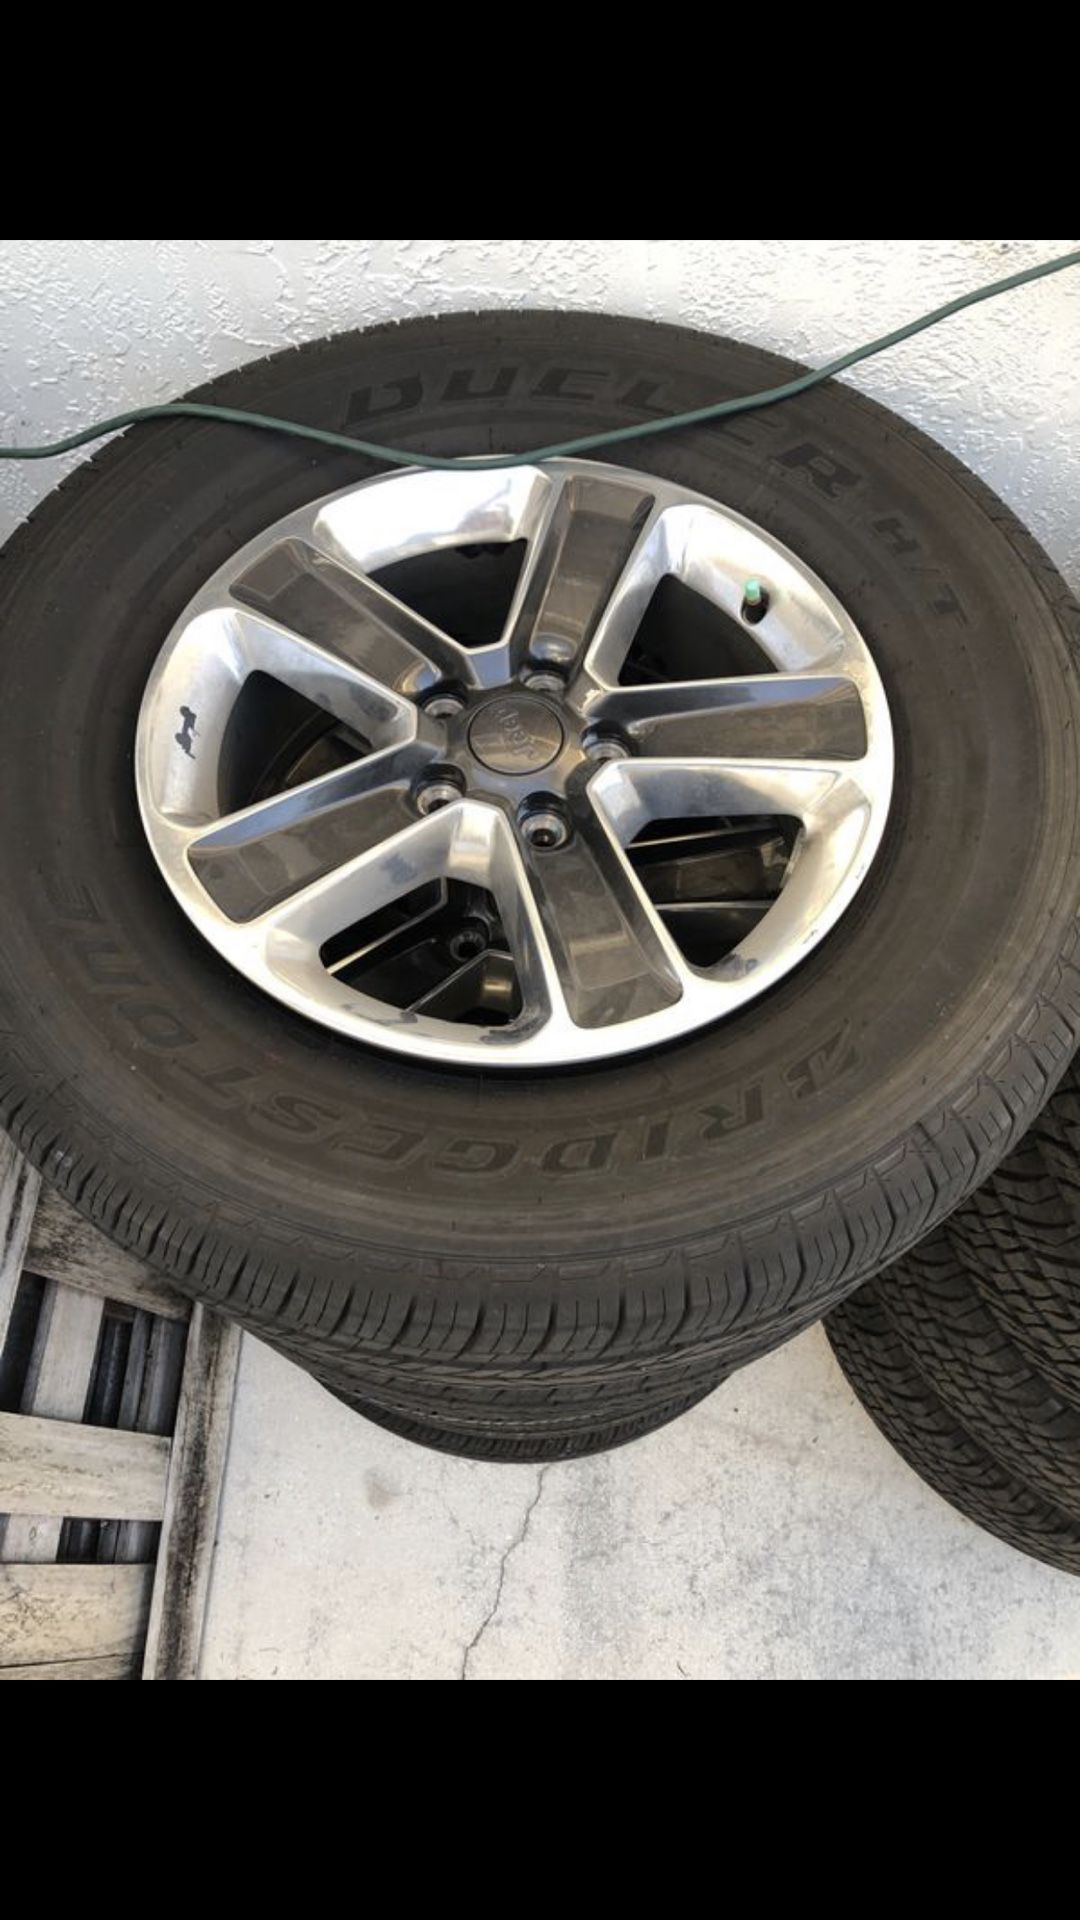 2019 Jeep Wrangler JL Sahara Rims & Tires